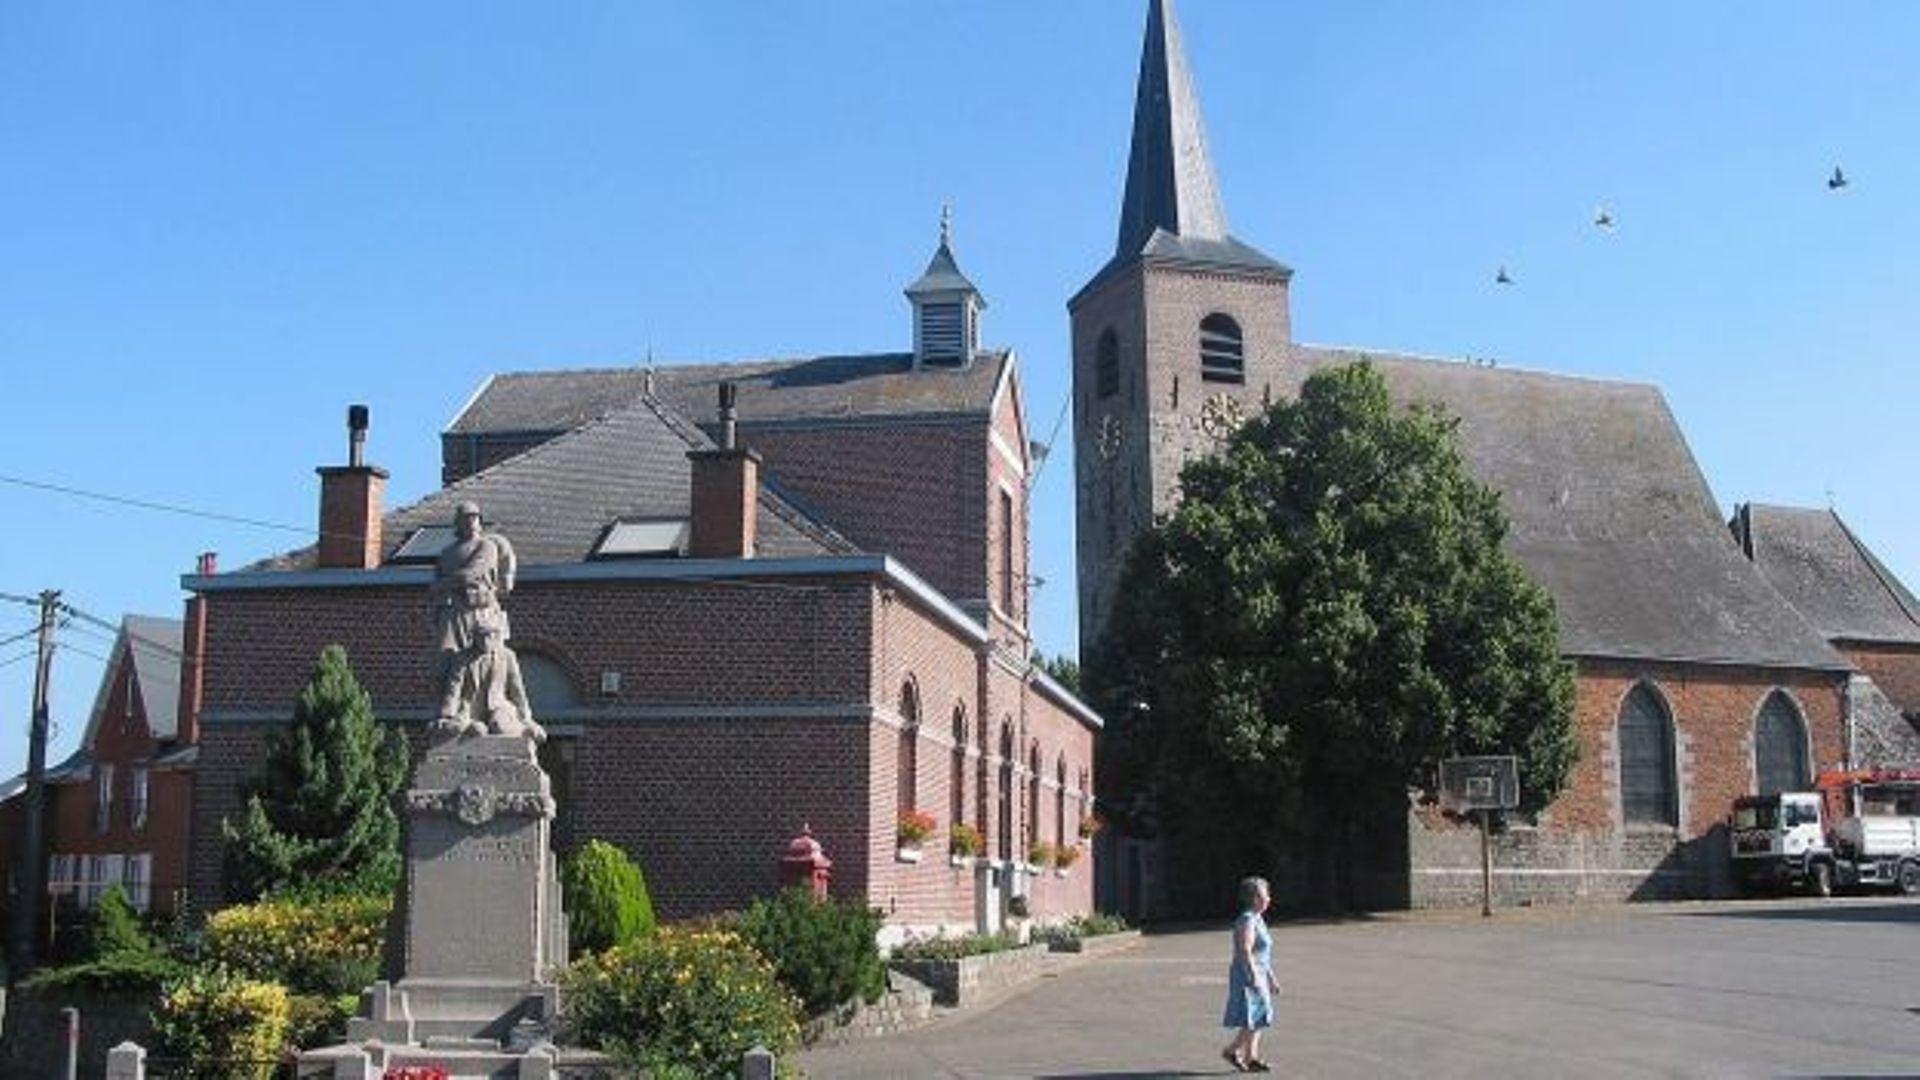 Maison communale et l’église Saint-Martin